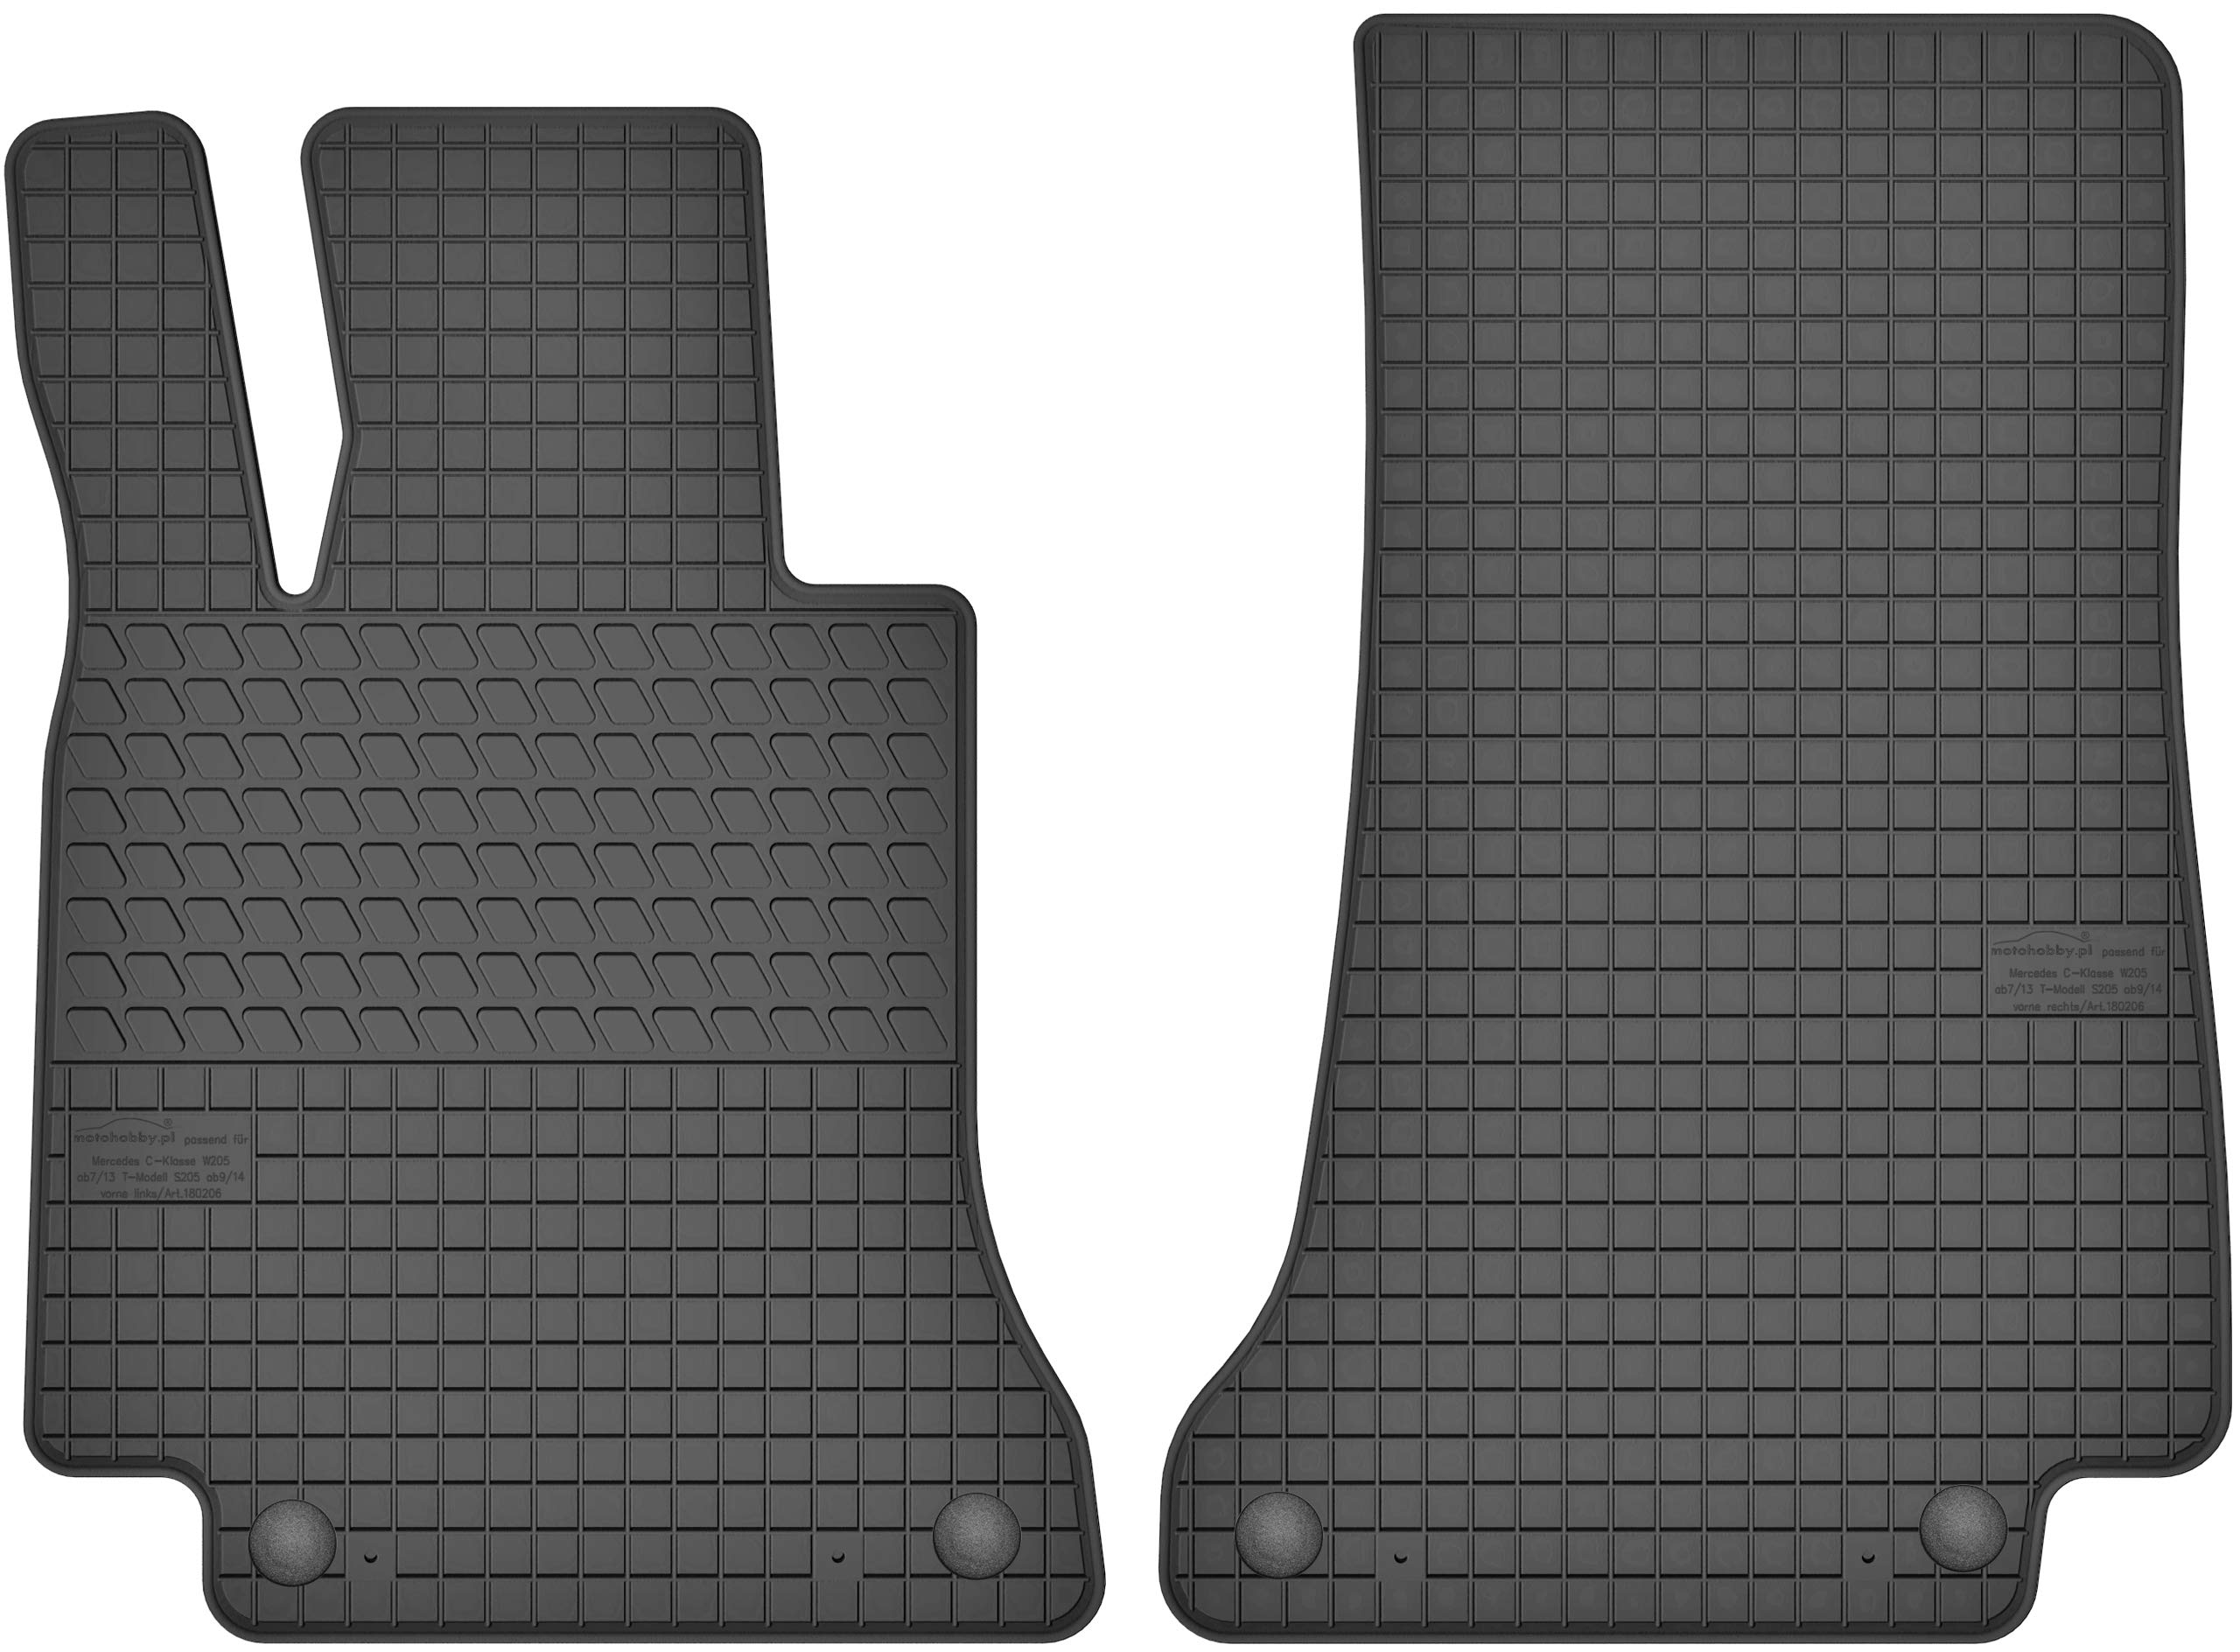 Gummimatten Vorne Gummi Fußmatten Satz für Mercedes-Benz C-Klasse W205 (ab 2014) - 2-teilig - Passgenau